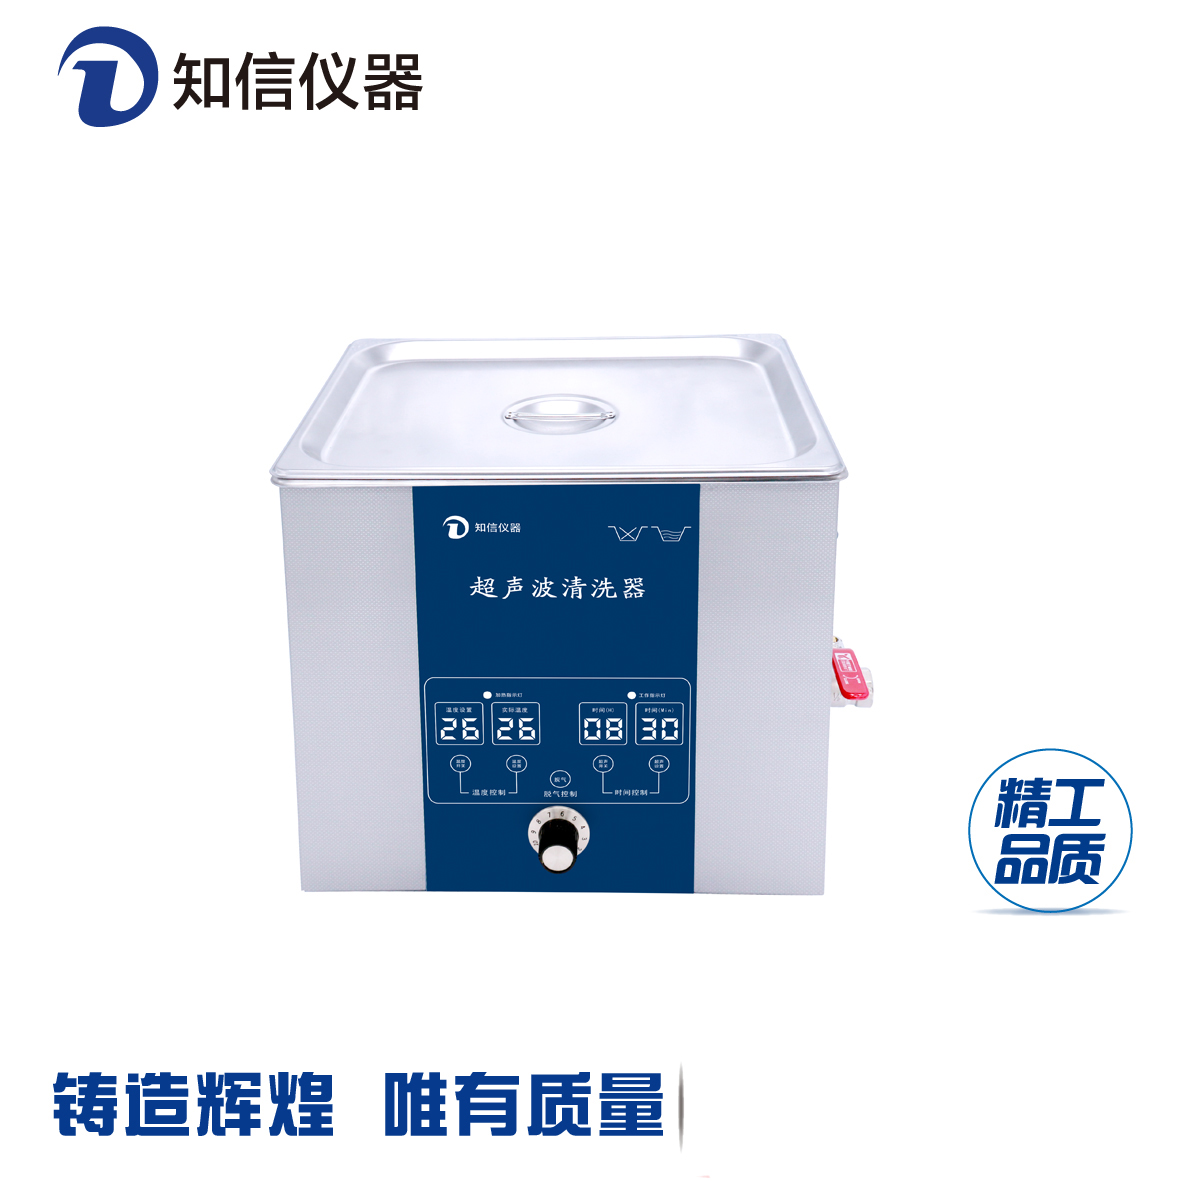 上海知信超声波清洗机ZX-5200DE单频型清洗机首饰清洗机除油锈清洗机实验室清洗机